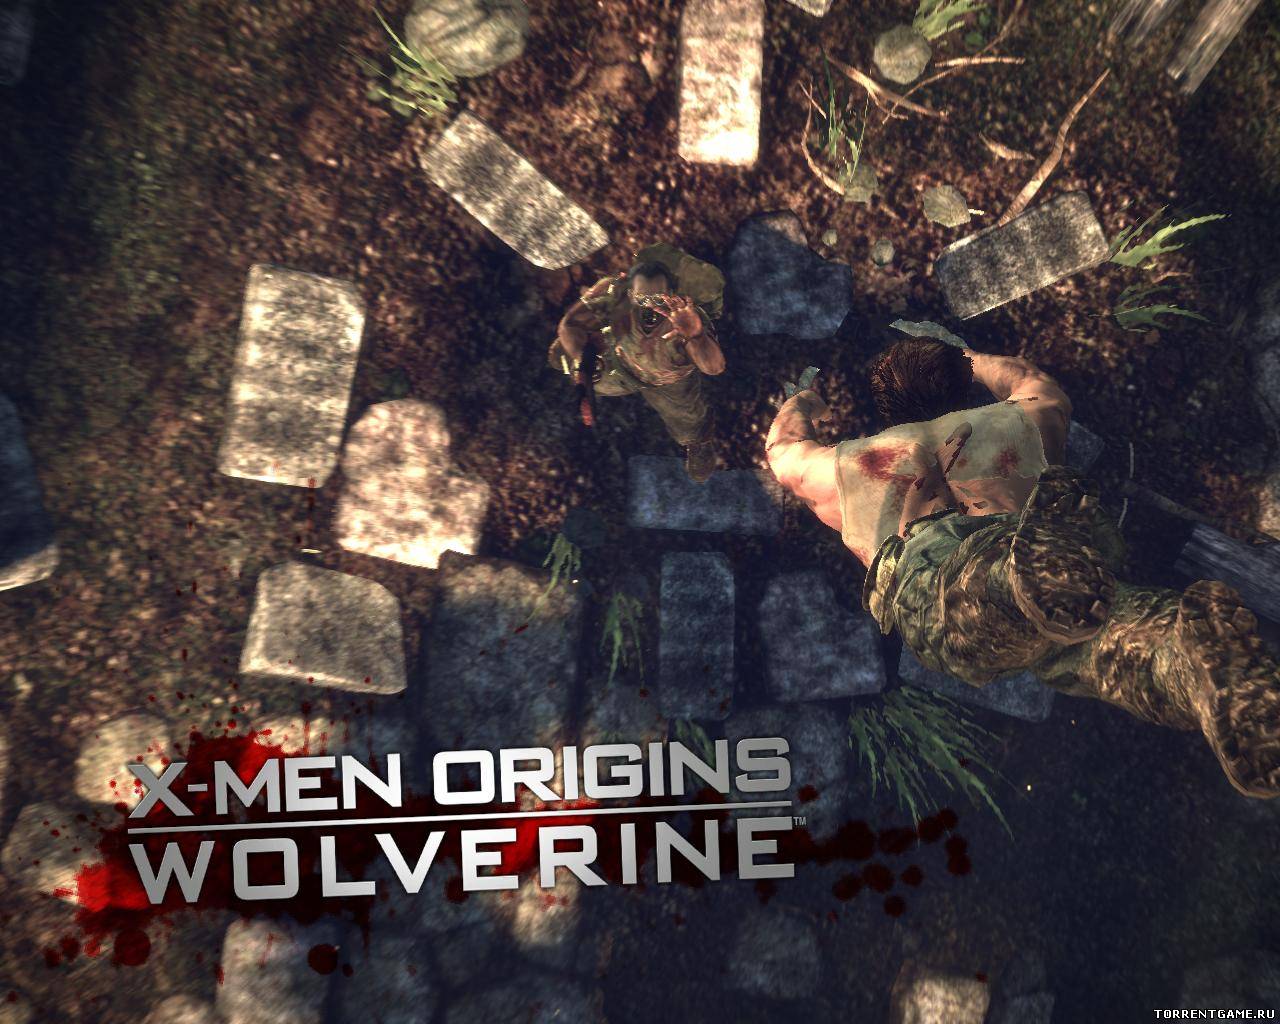 X-men origins wolverine. 